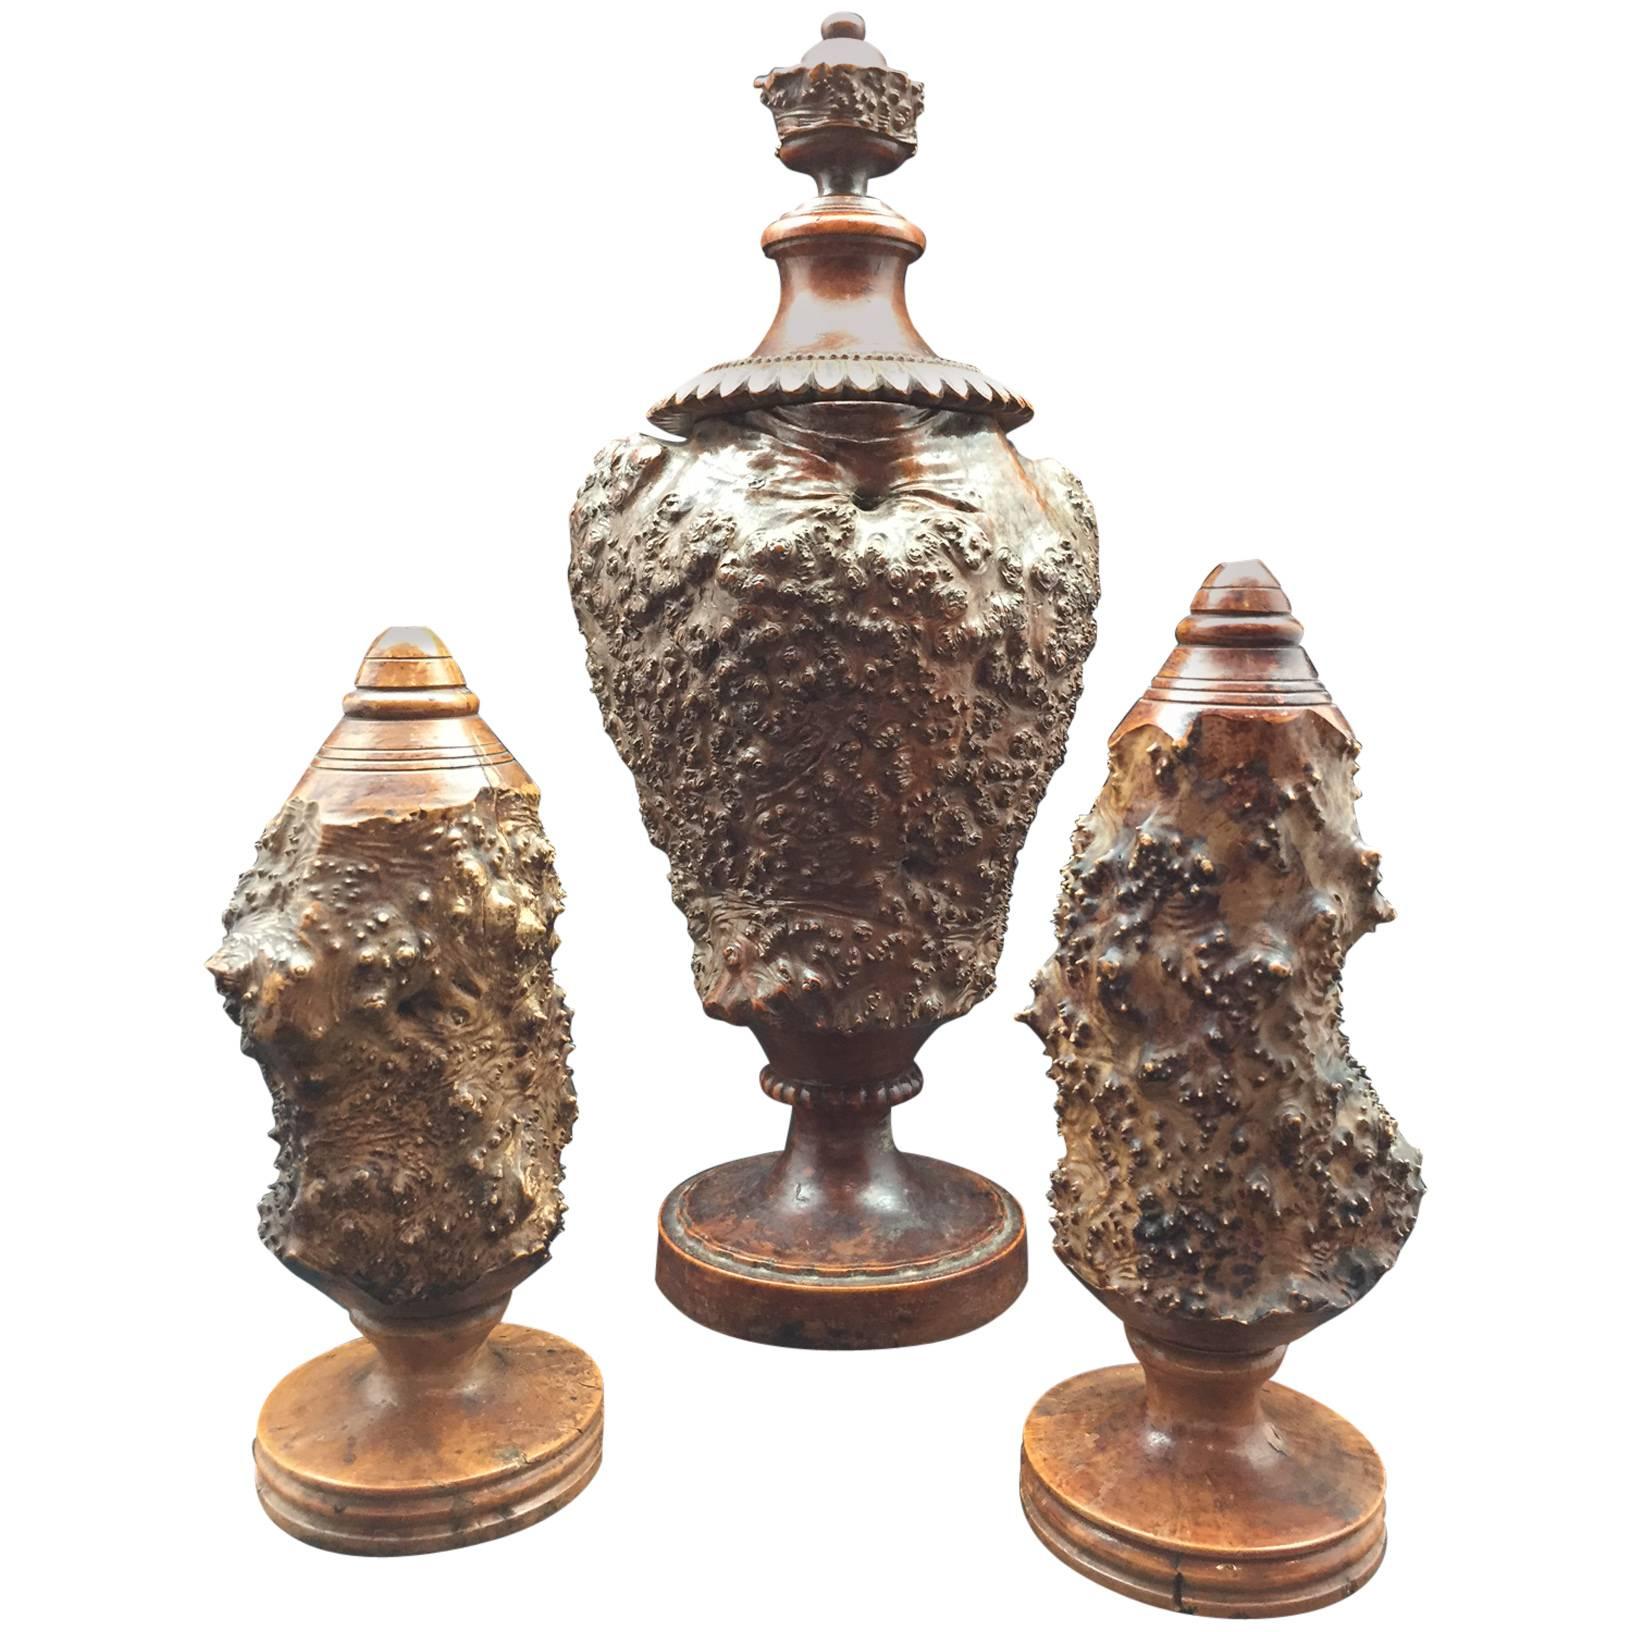 Burr or Burl Wood 19th Century European Garniture Set of Three Turned Jars